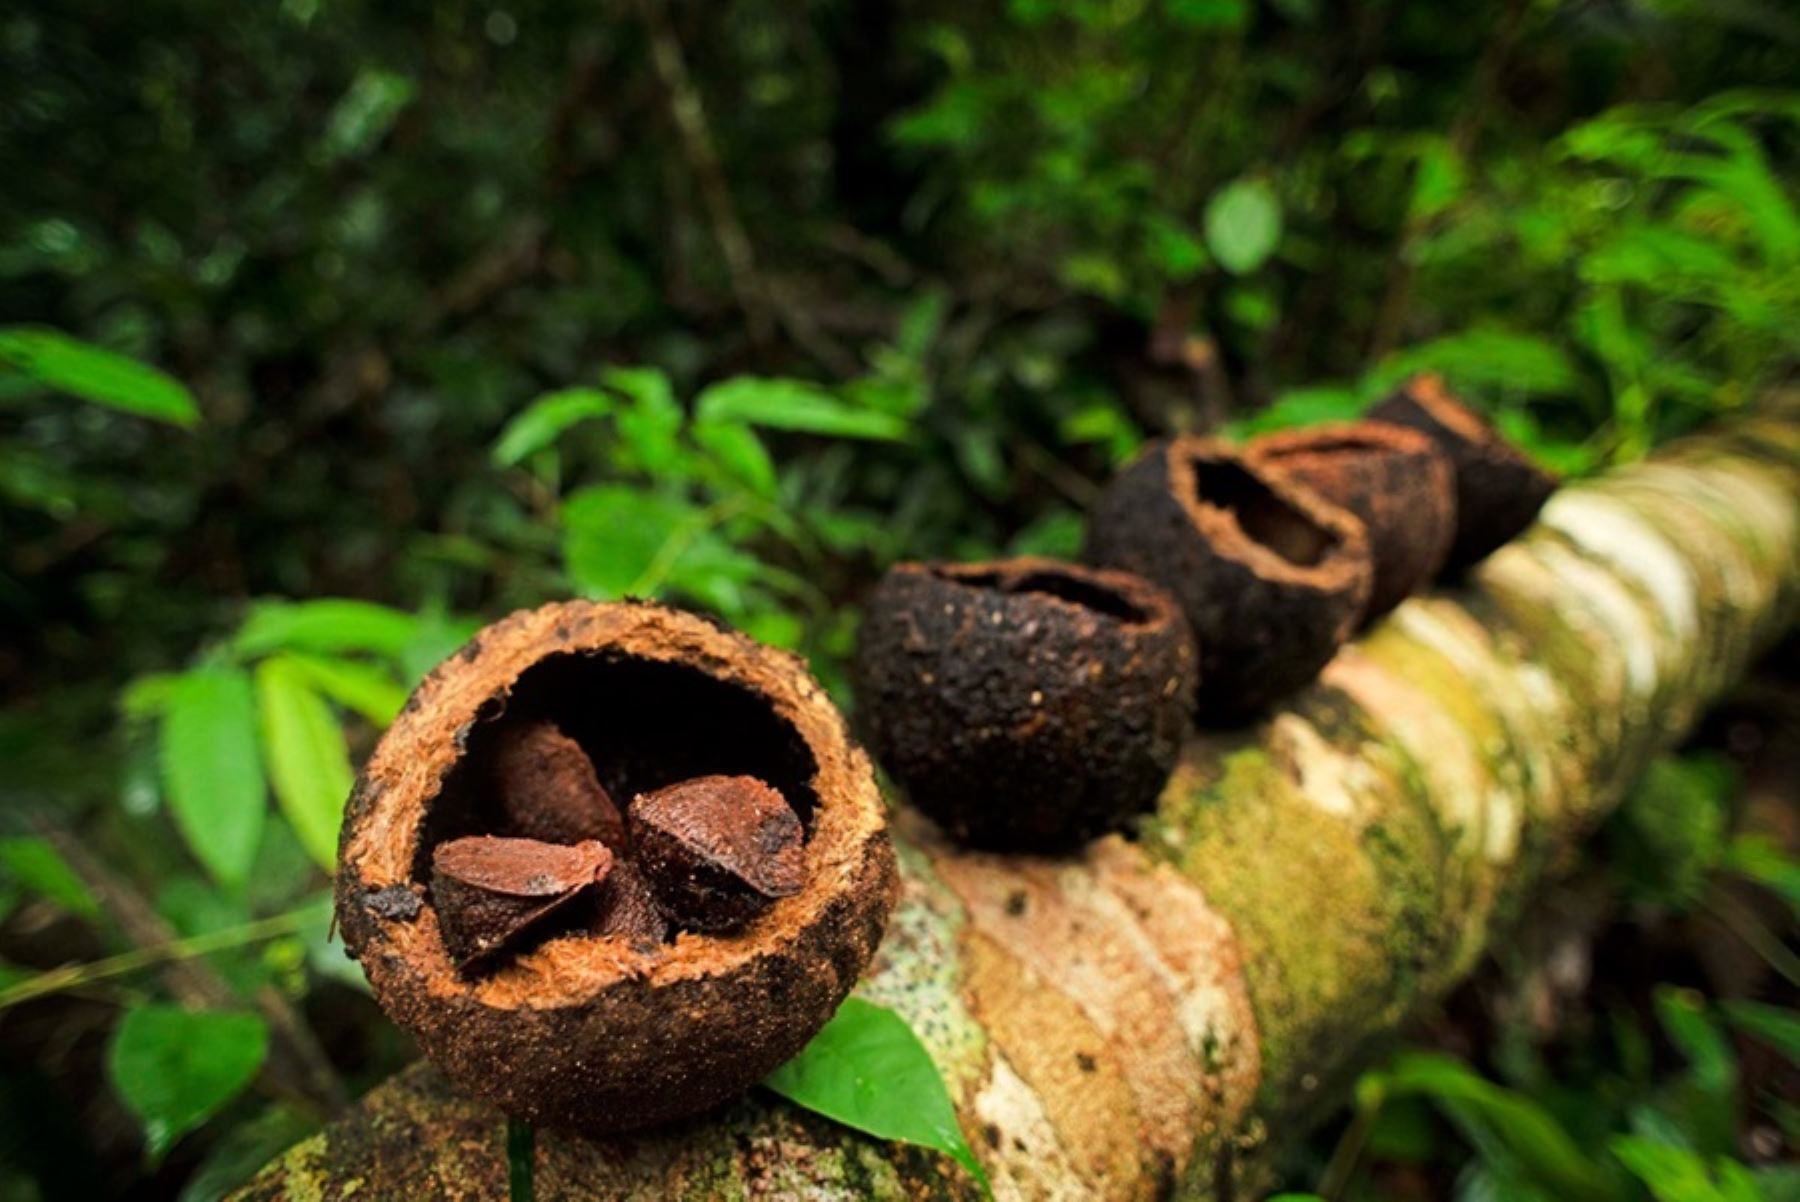 Más de 500,000 hectáreas de bosques de castaña serán protegidas de la deforestación gracias a un nuevo programa de conservación forestal ejecutado en la región Madre de Dios, gracias al apoyo de la empresa privada.